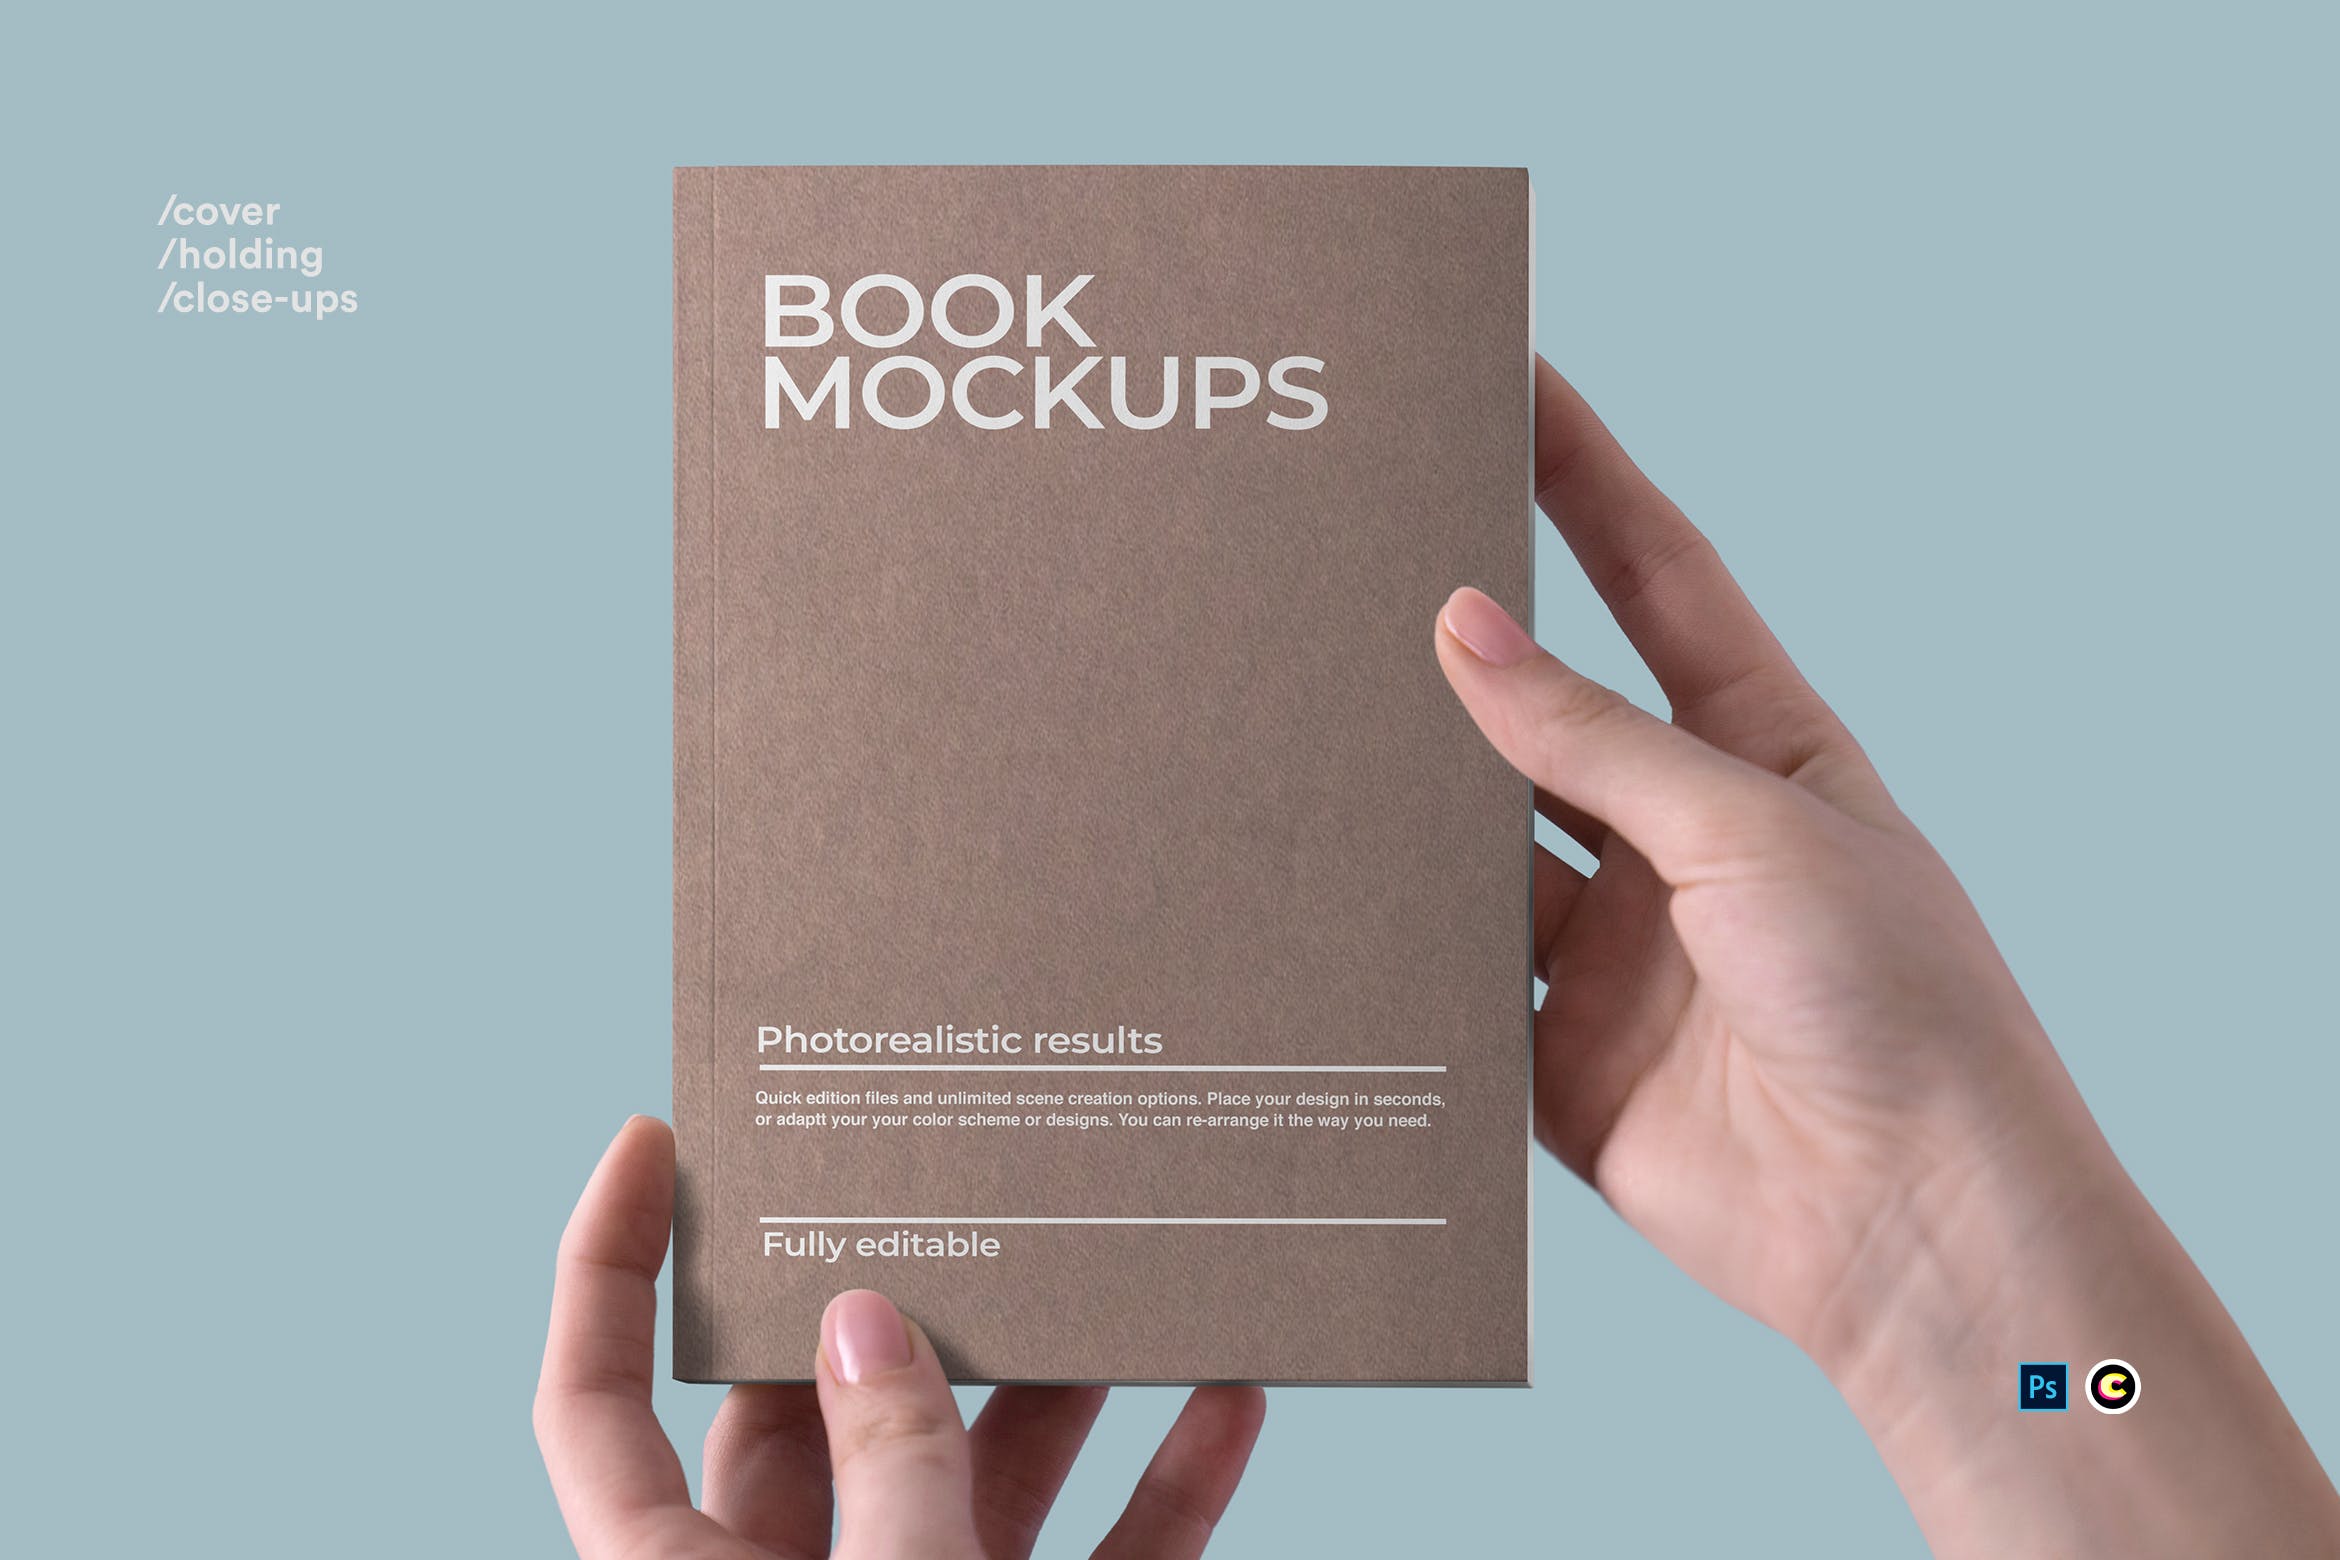 牛皮纸图书封面设计图案样机第一素材精选 Book Mockups插图